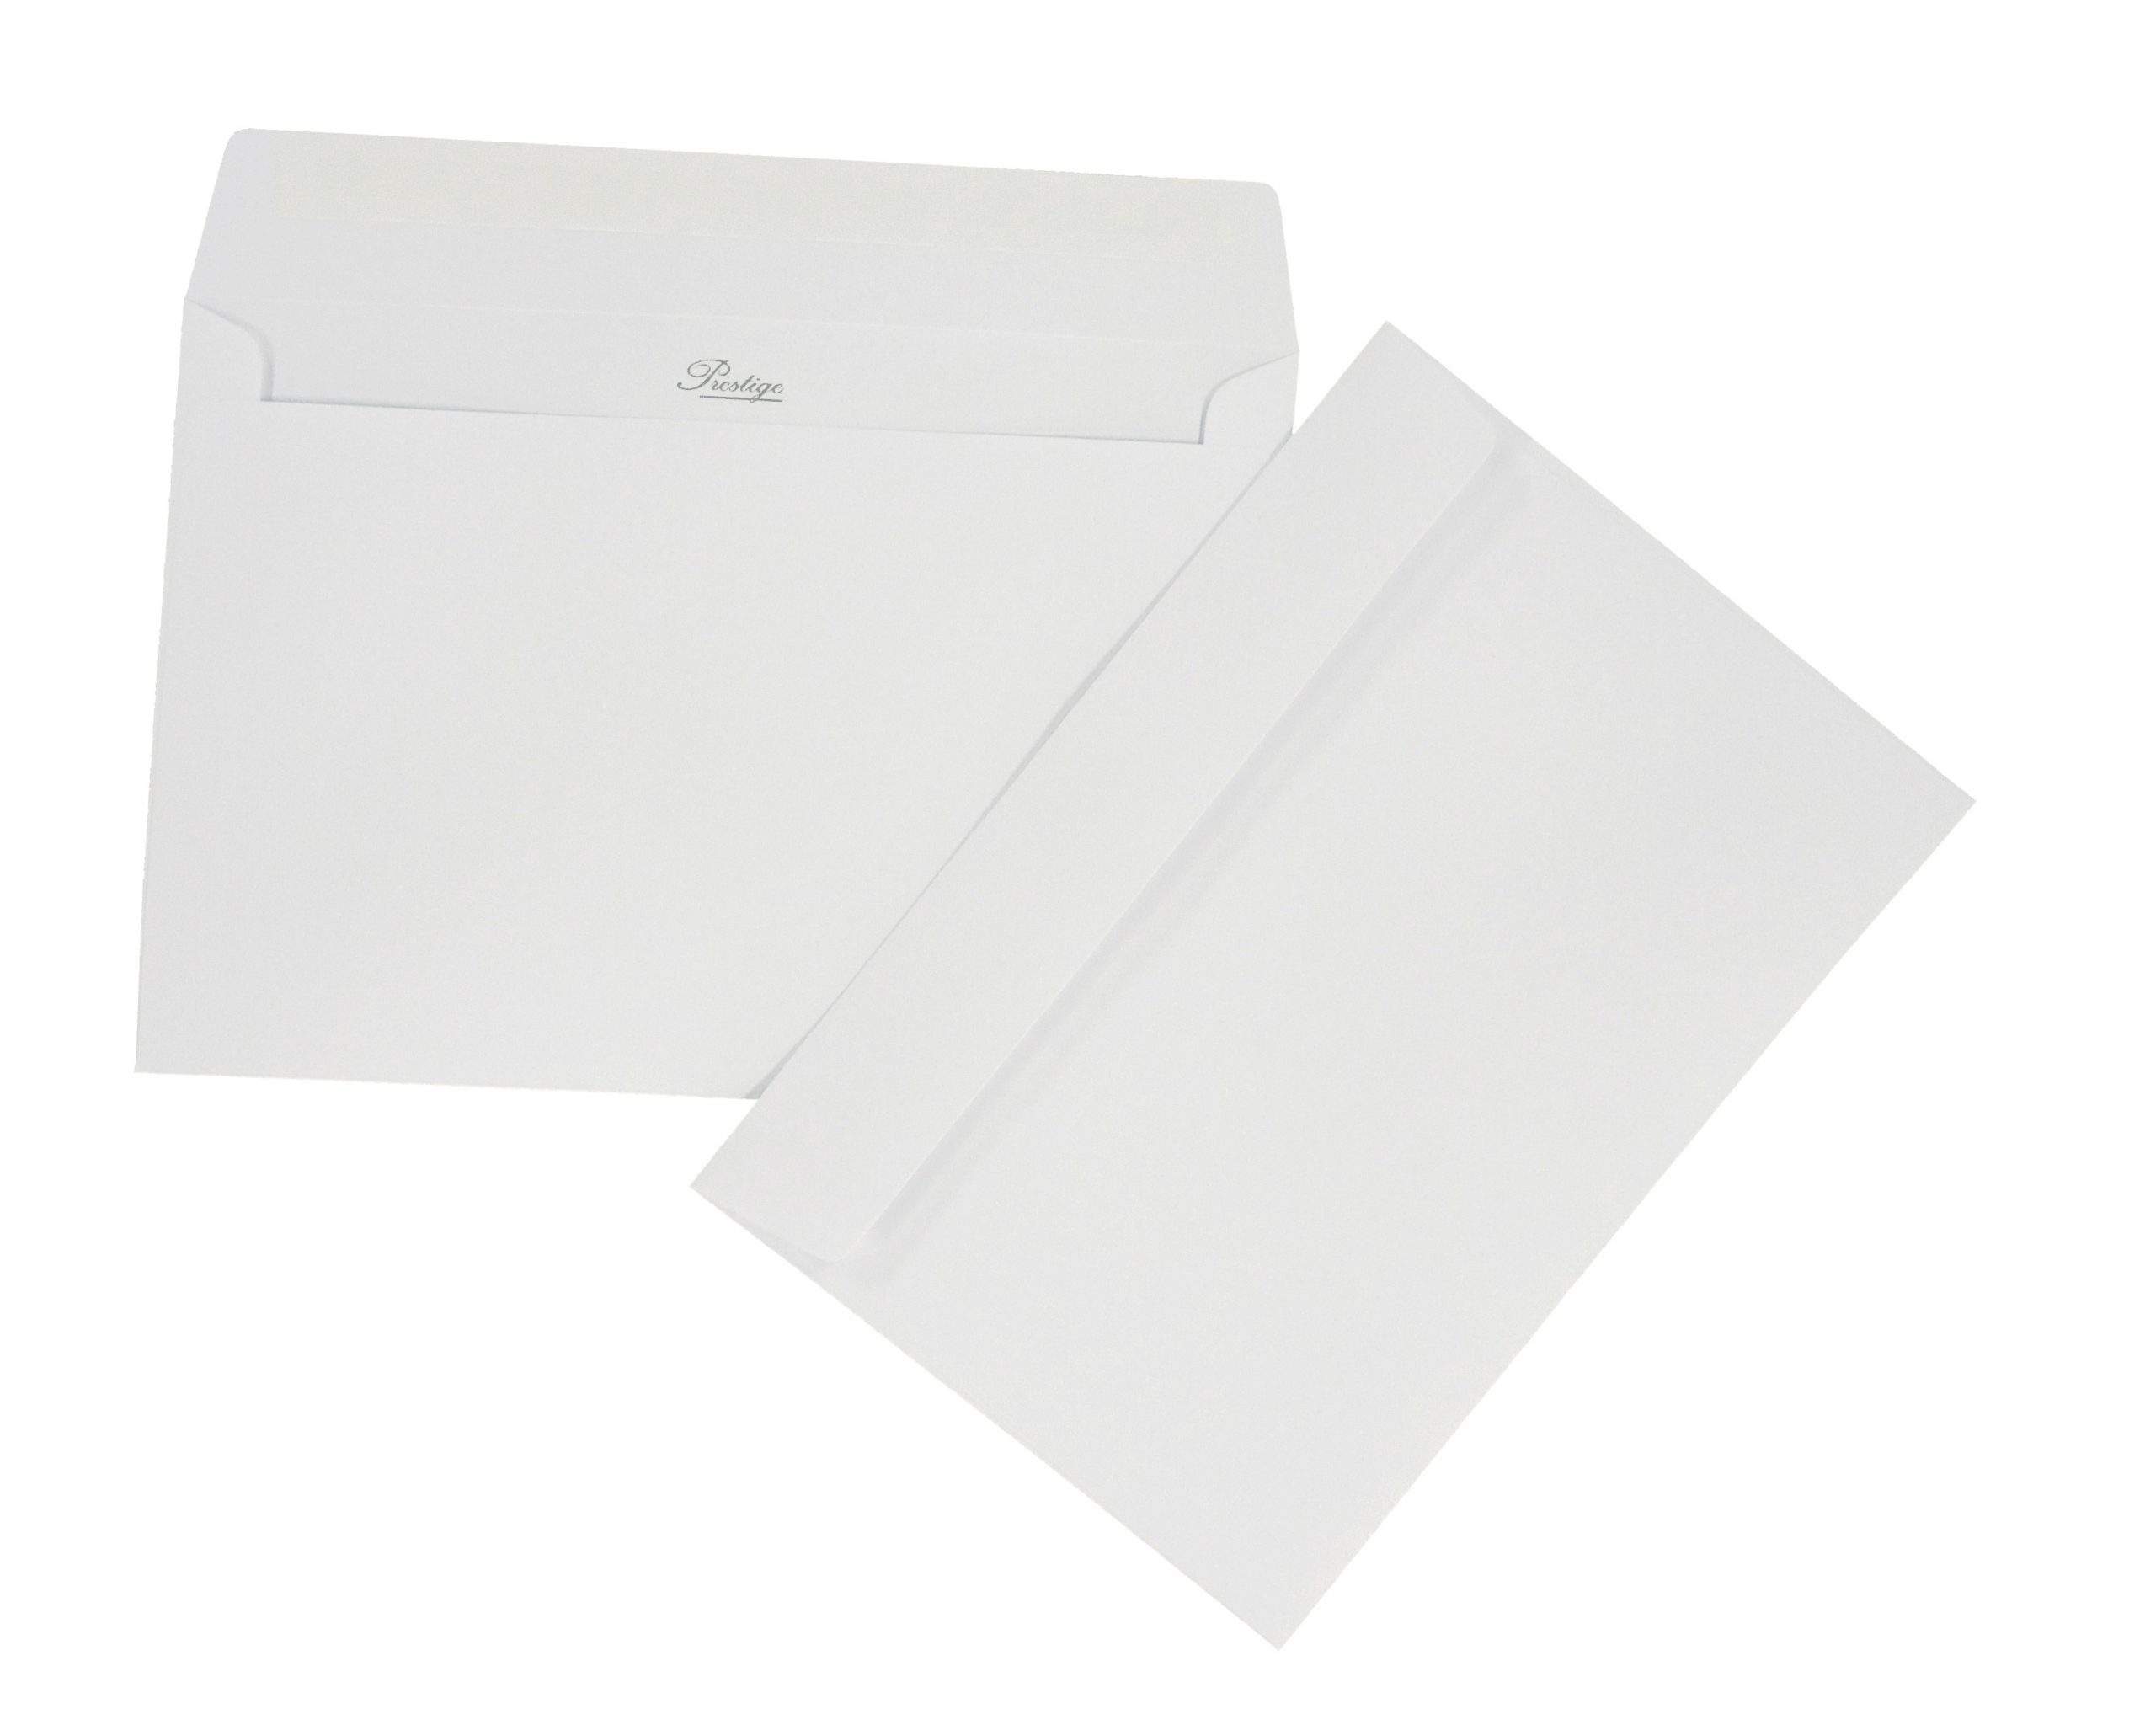 Lot de 1000 - Enveloppe blanche Prestige luxe C5 162 x 229 mm (A5, A4 plié  en 2) Papier extra blanc épais 135 g, Patte autocollante pour carte de